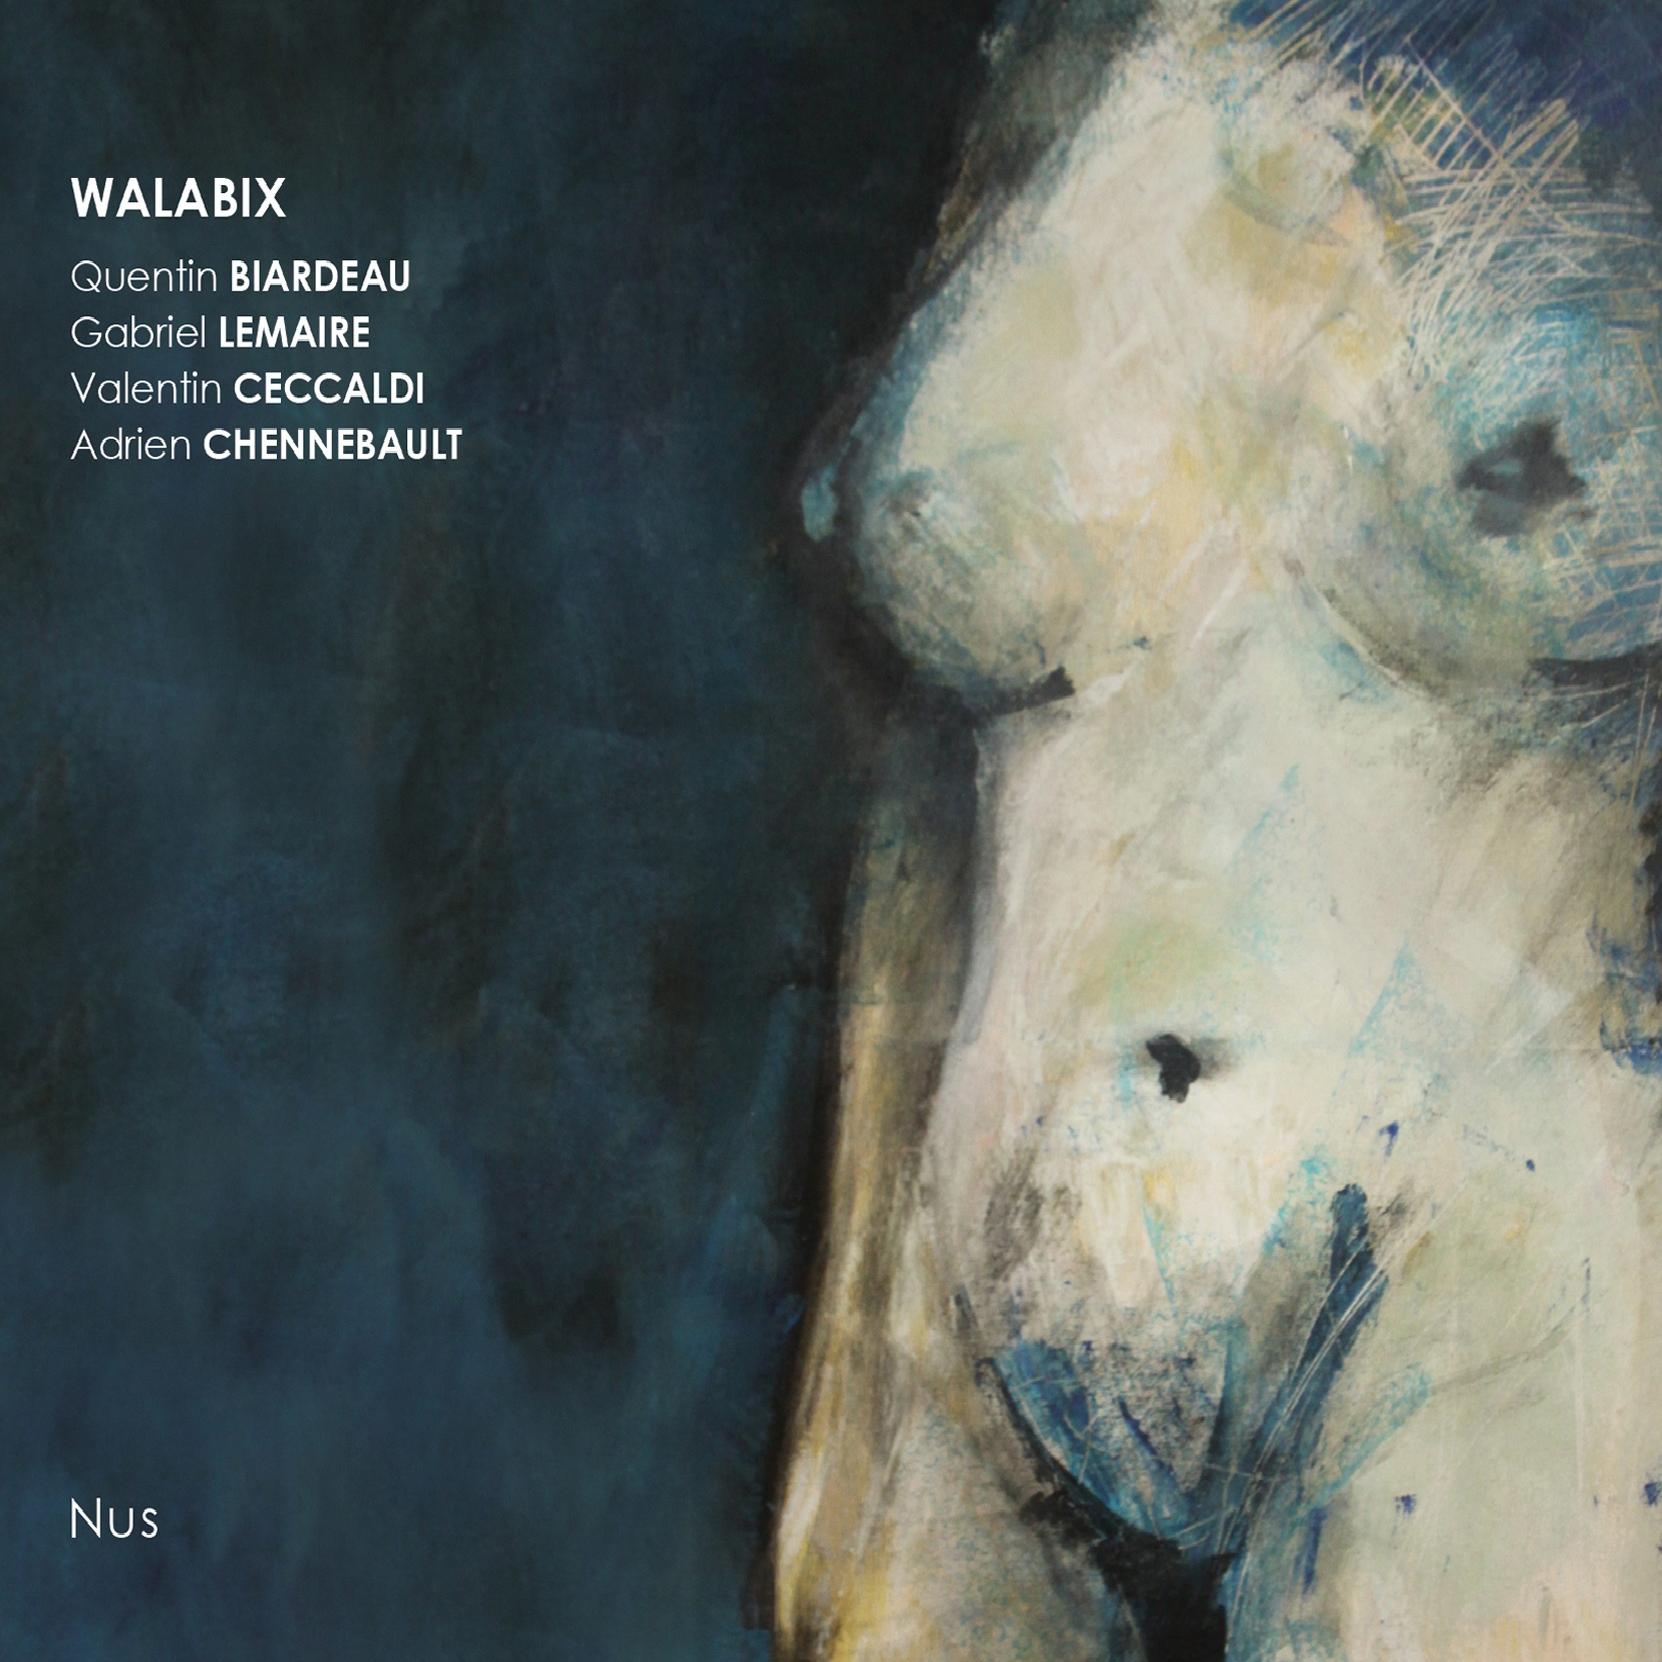 Walabix - Nus (2012)